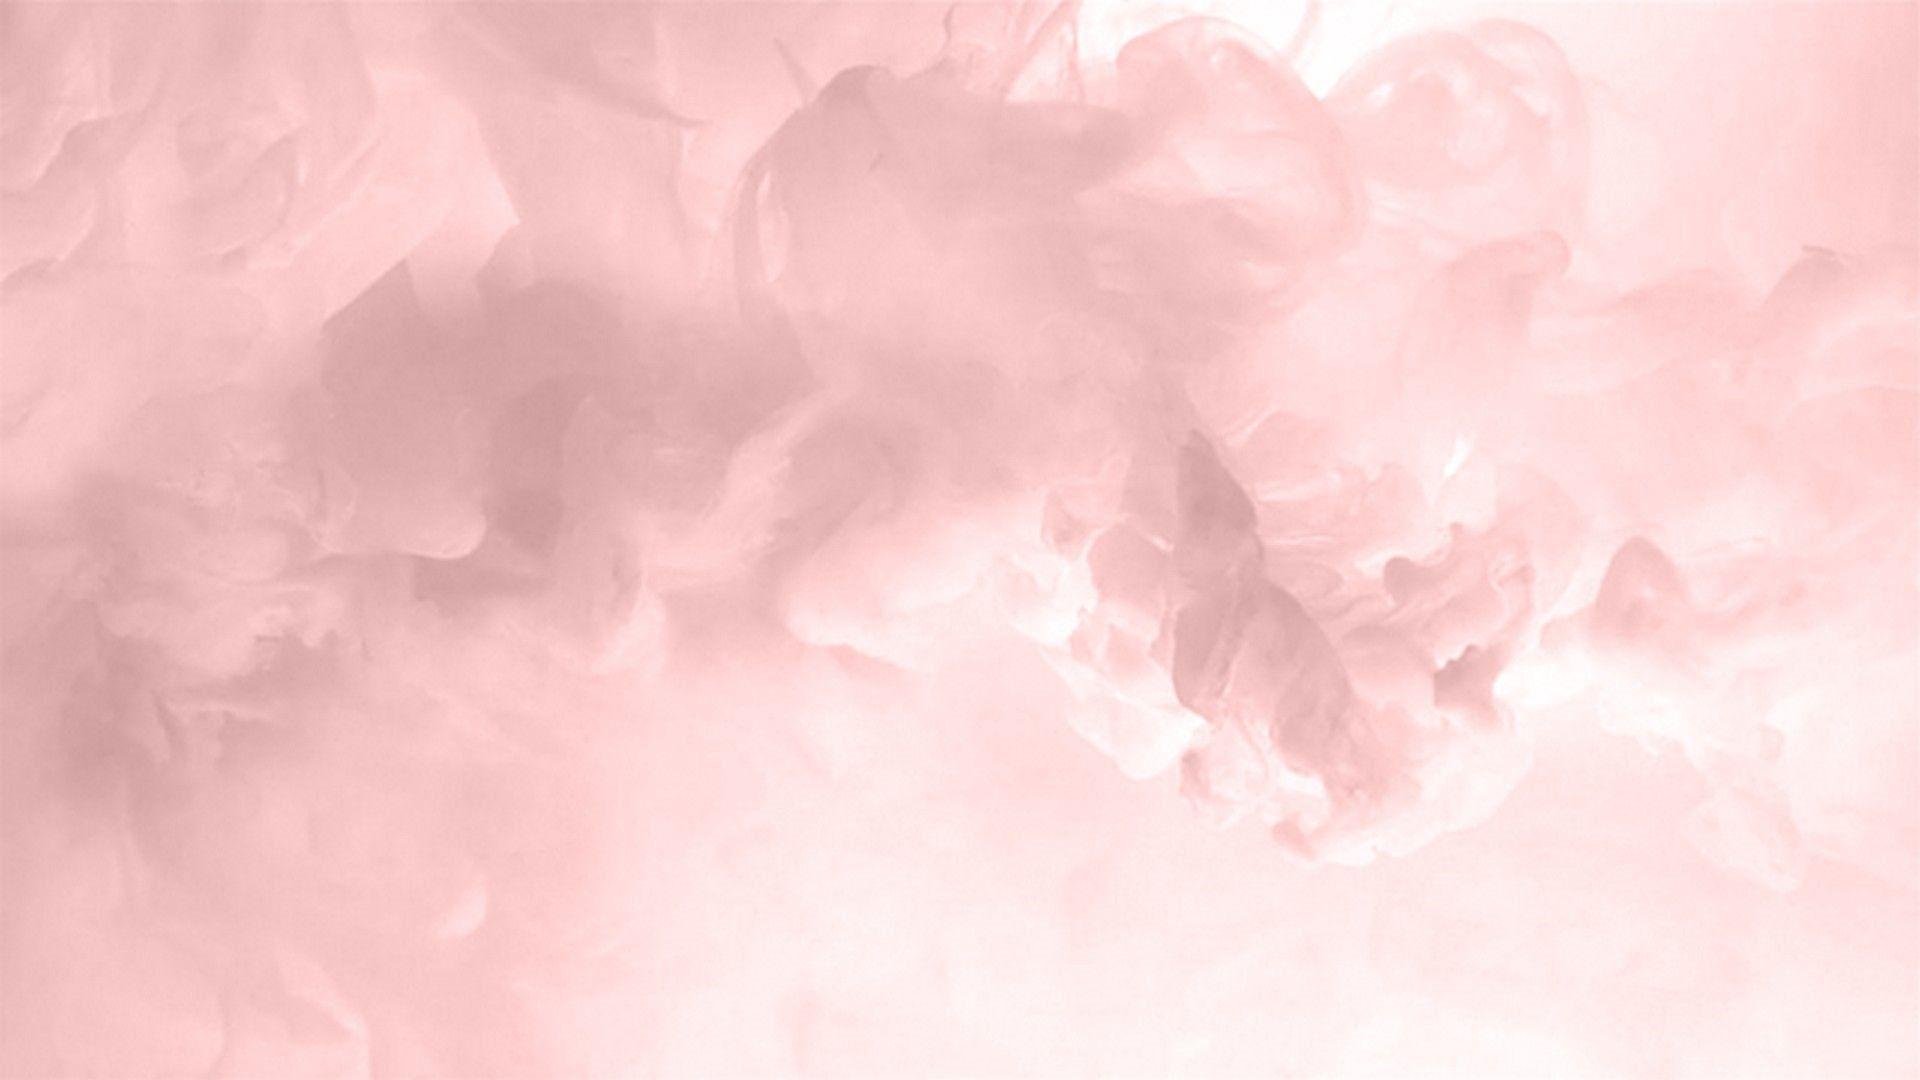 Hãy khám phá bộ sưu tập hình nền máy tính thật đáng yêu với tông màu hồng pastel nhẹ nhàng. Đây là sự lựa chọn hoàn hảo để tô điểm cho không gian làm việc hay học tập của bạn. Bộ sưu tập này lấy cảm hứng từ những hình ảnh đơn giản nhưng tinh tế, giúp bạn luôn cảm thấy thư giãn và được bao trọn trong không gian màu hồng xinh đẹp.